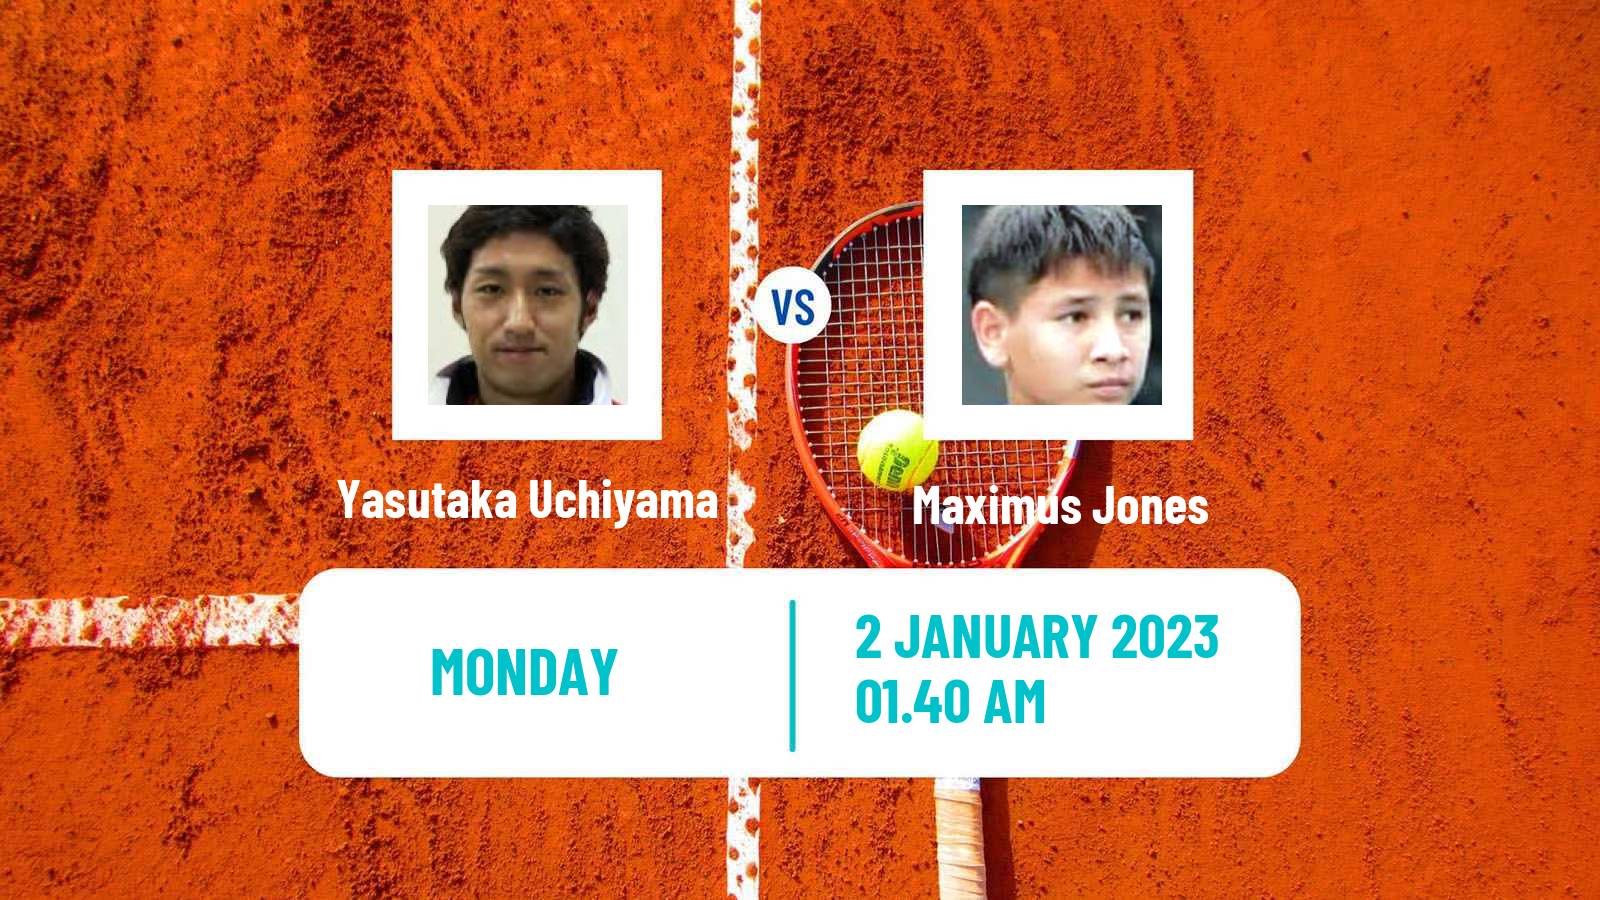 Tennis ATP Challenger Yasutaka Uchiyama - Maximus Jones